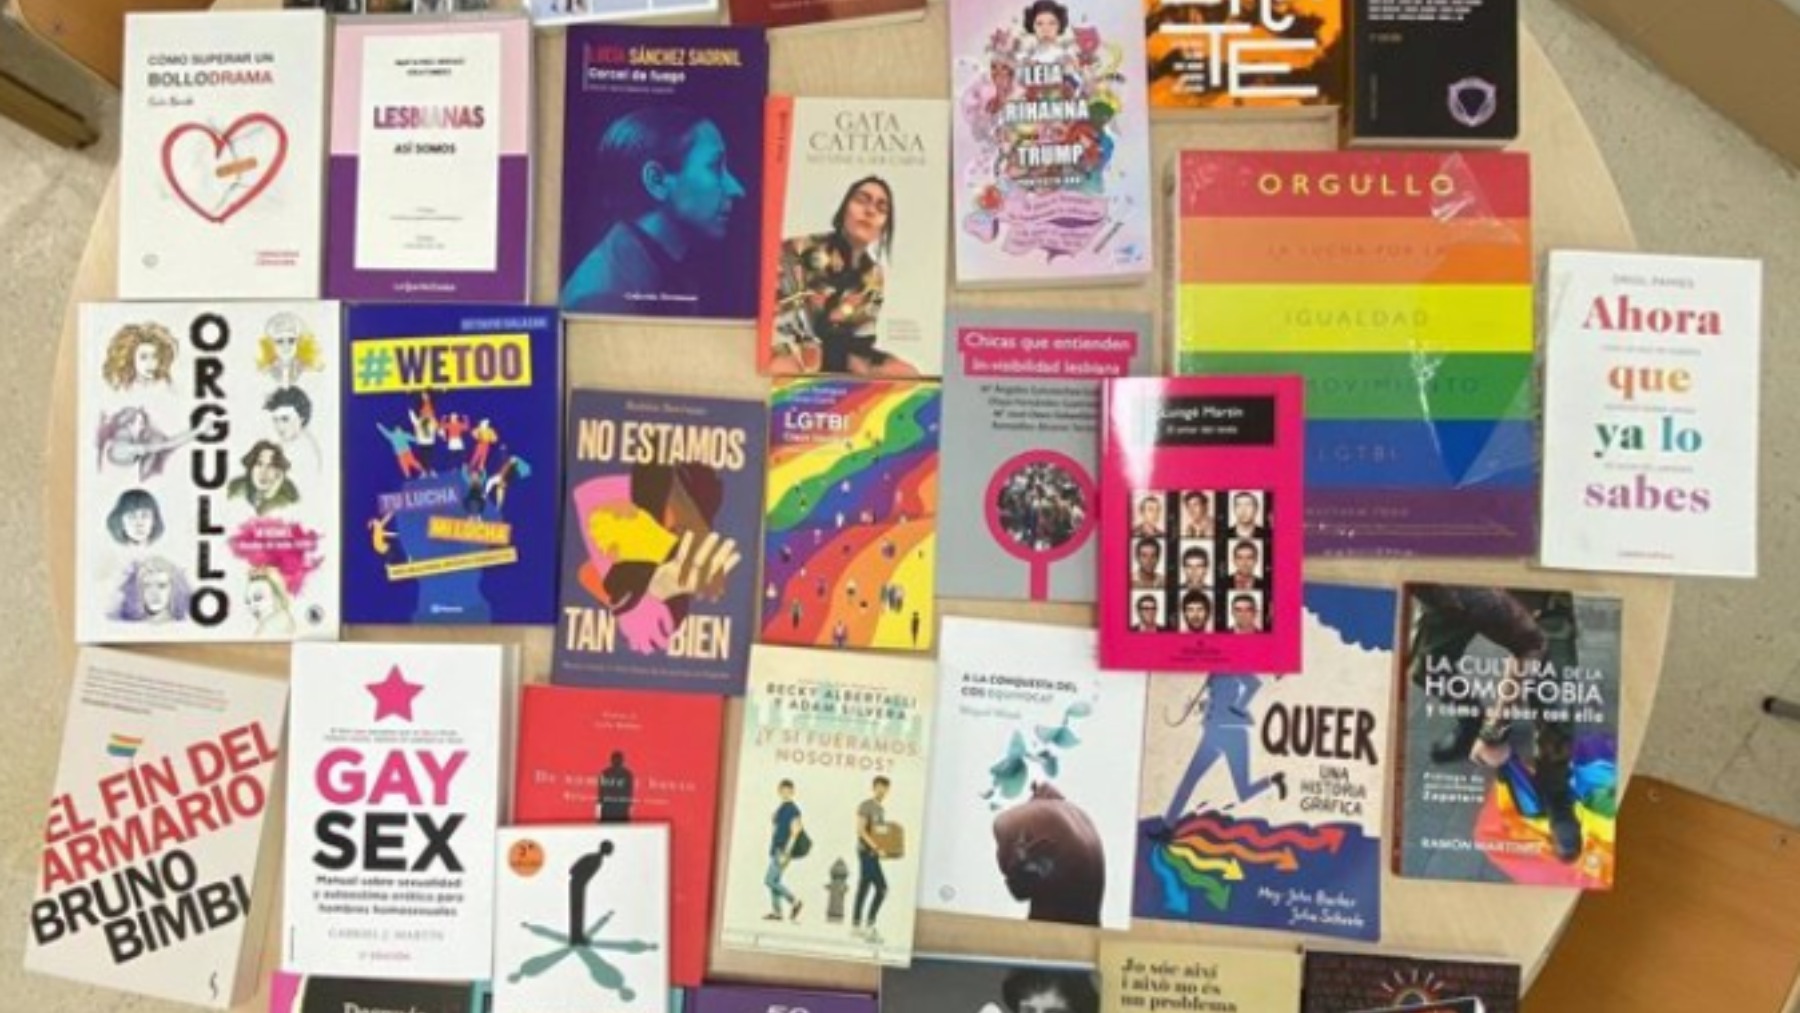 Gay Sex: el libro para adultos que habla de cocinar semen y está en 11 institutos de Castellón